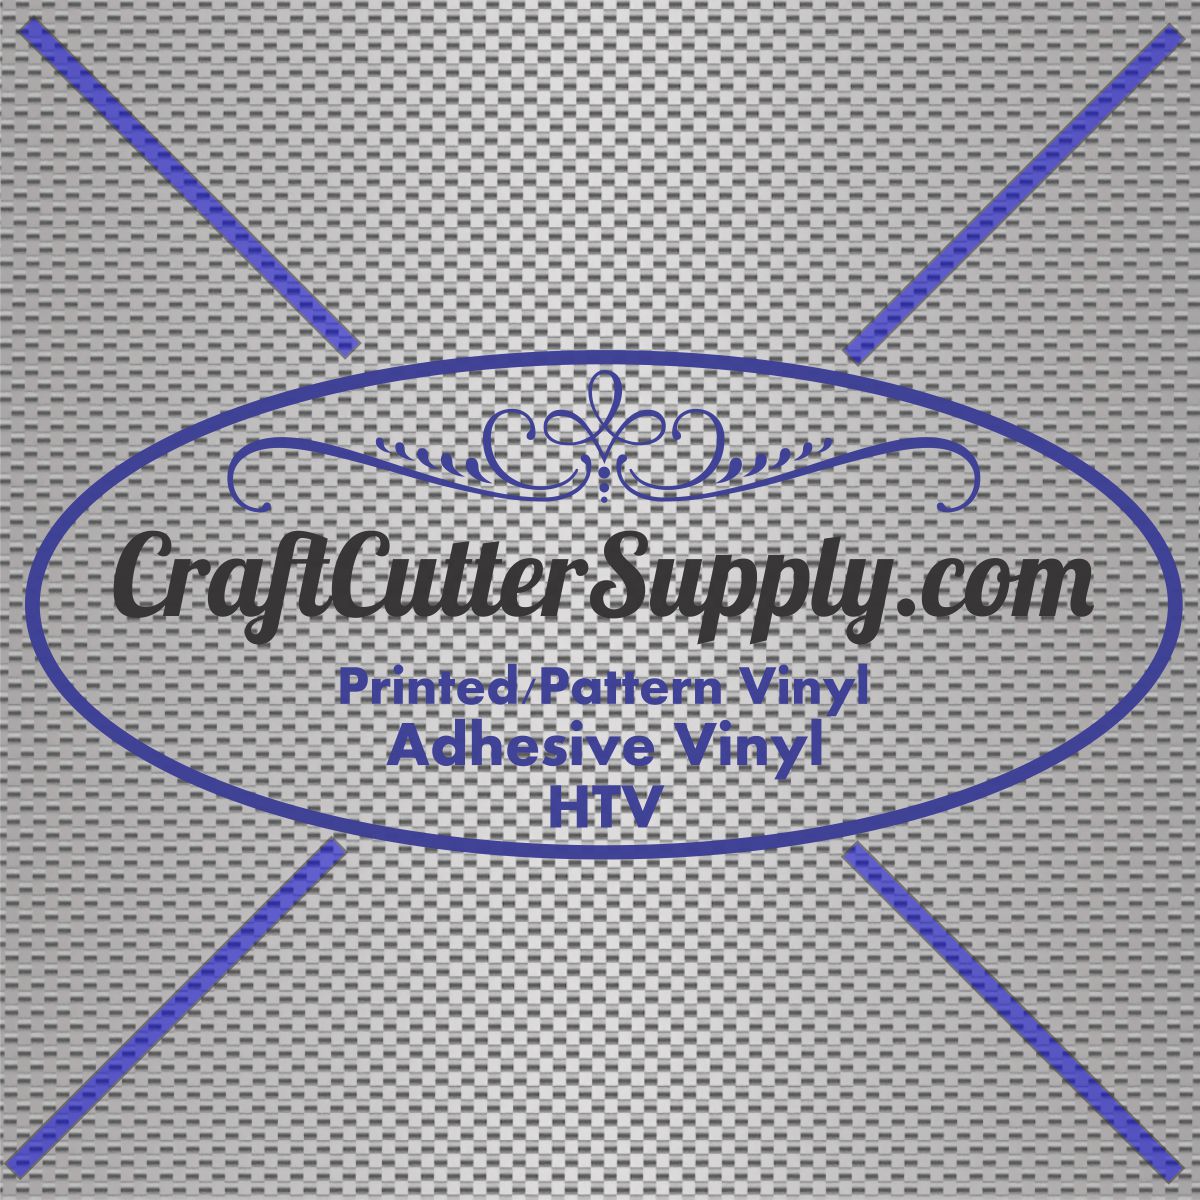 Silver Carbon Fiber 12x12 - CraftCutterSupply.com